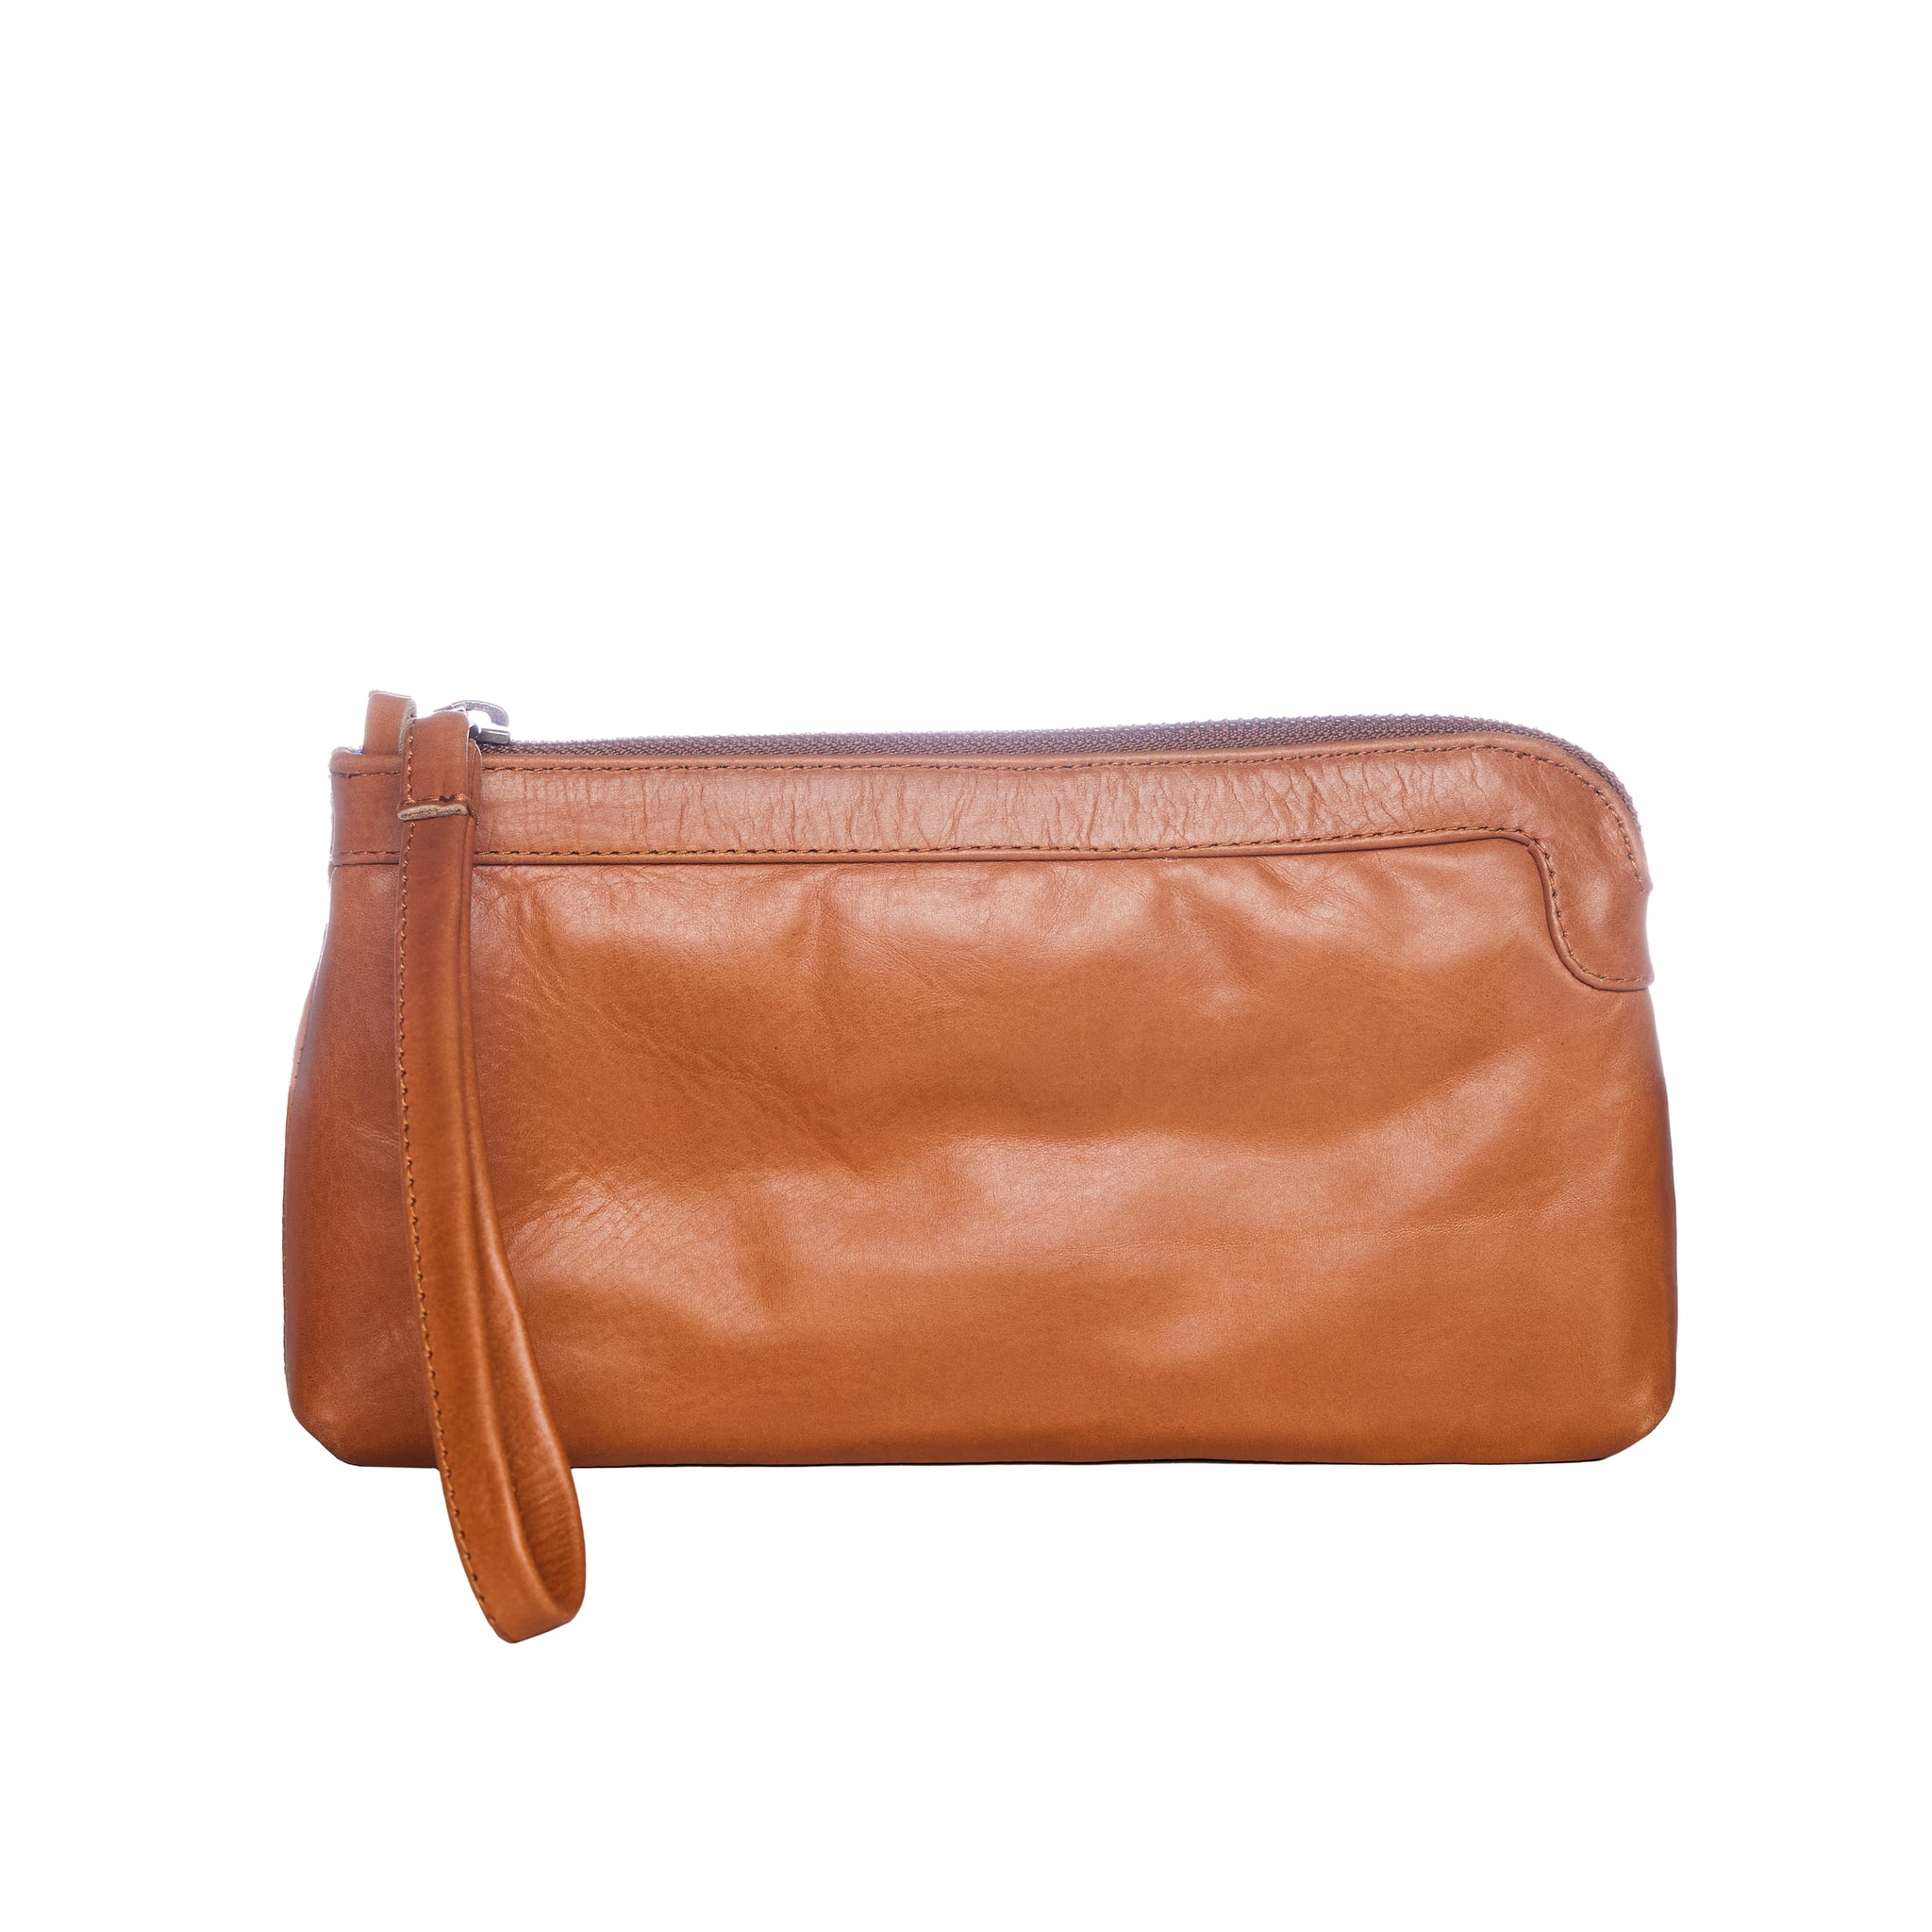 Berlin Leather Clutch Wallet - Caramel